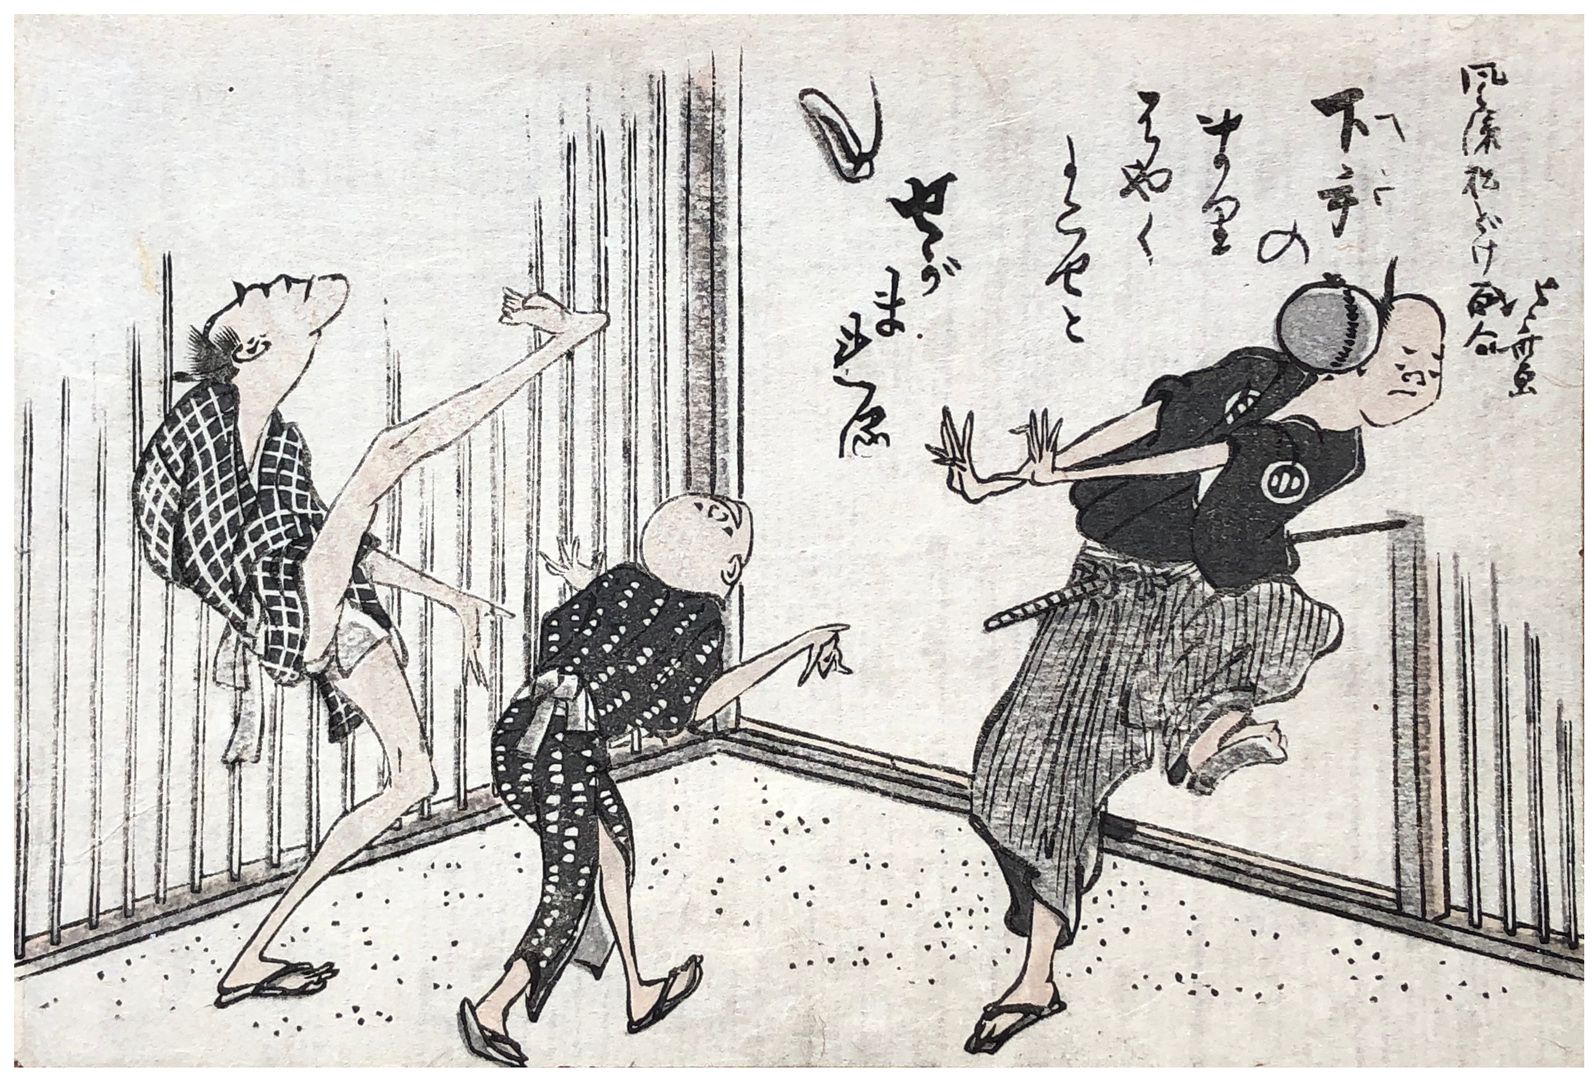 Hokusai - Playing Ball - 100 Fashionable Comic Verses